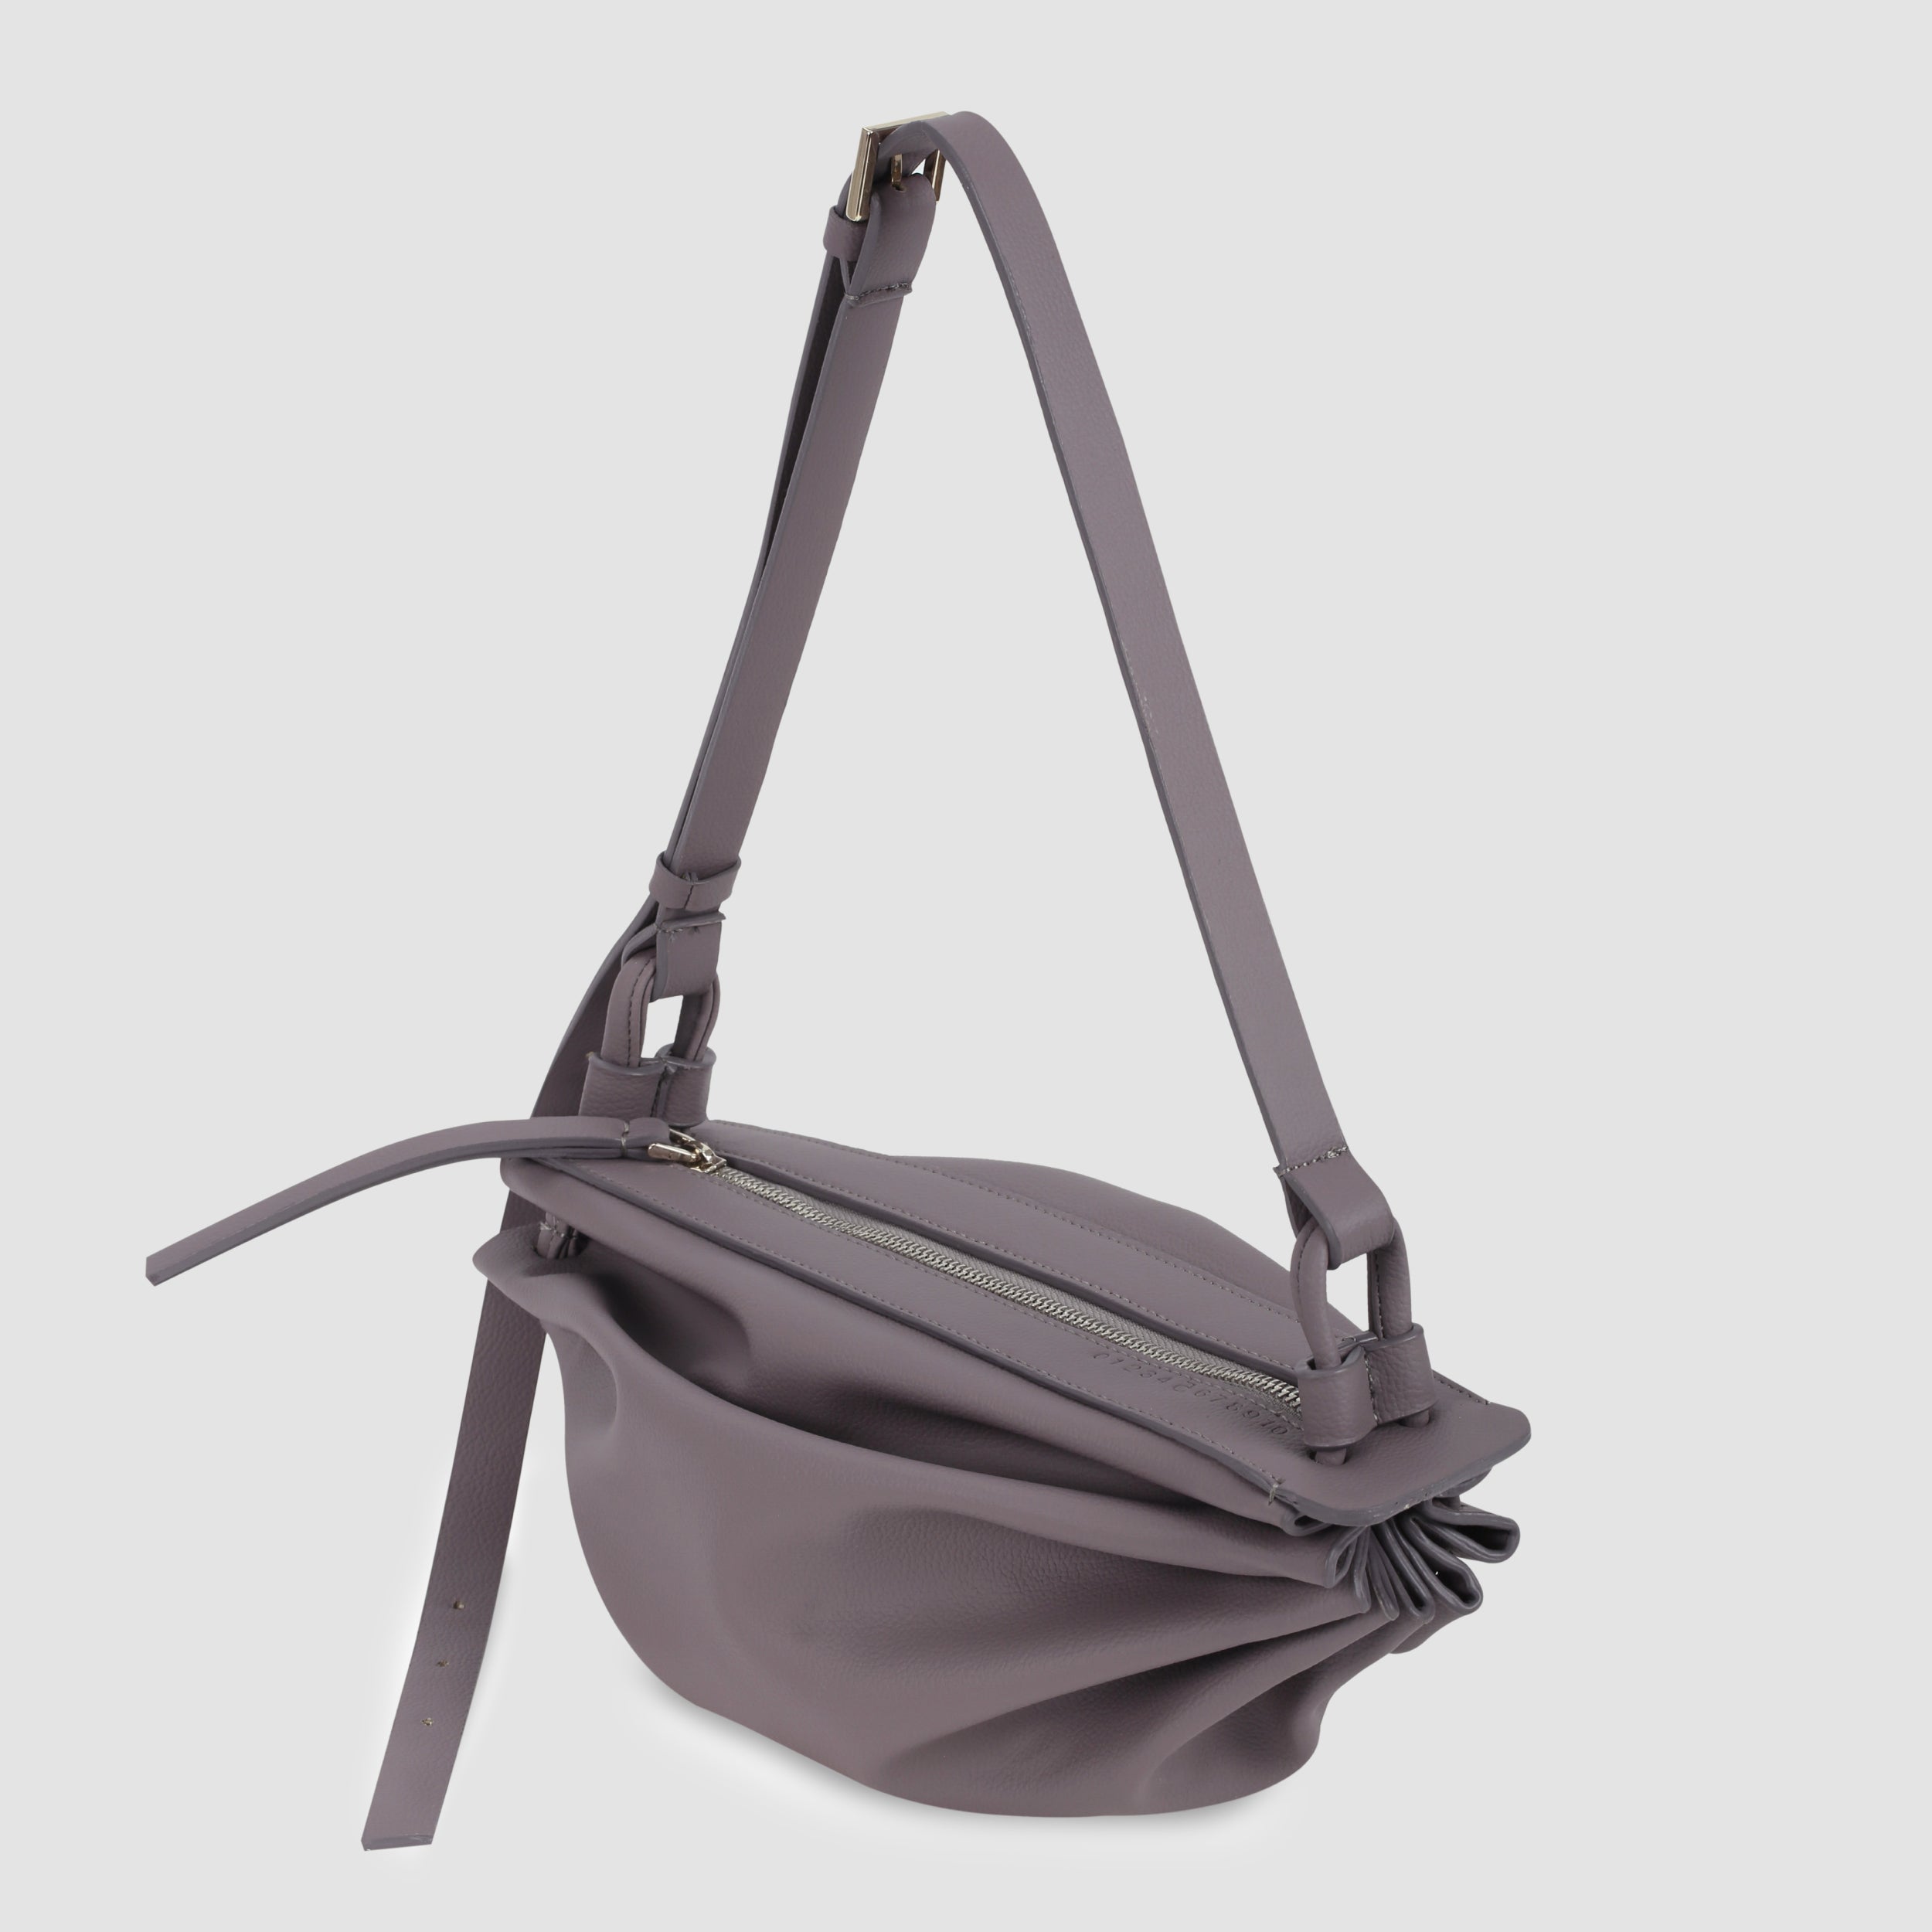 BOAT bag large size (M) smoke purple